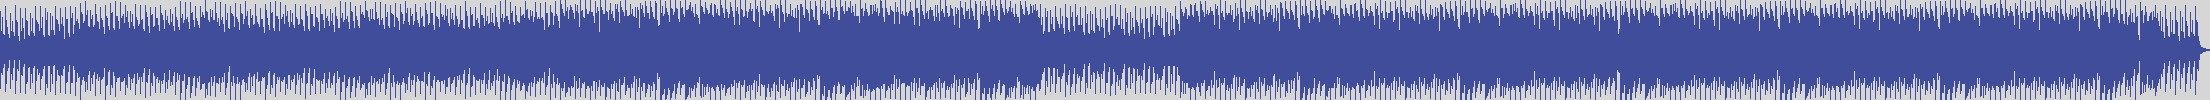 nf_boyz_records [NFY044] The Soho Emsemble - Den Tuck [Jazzy & Piano Mix] audio wave form